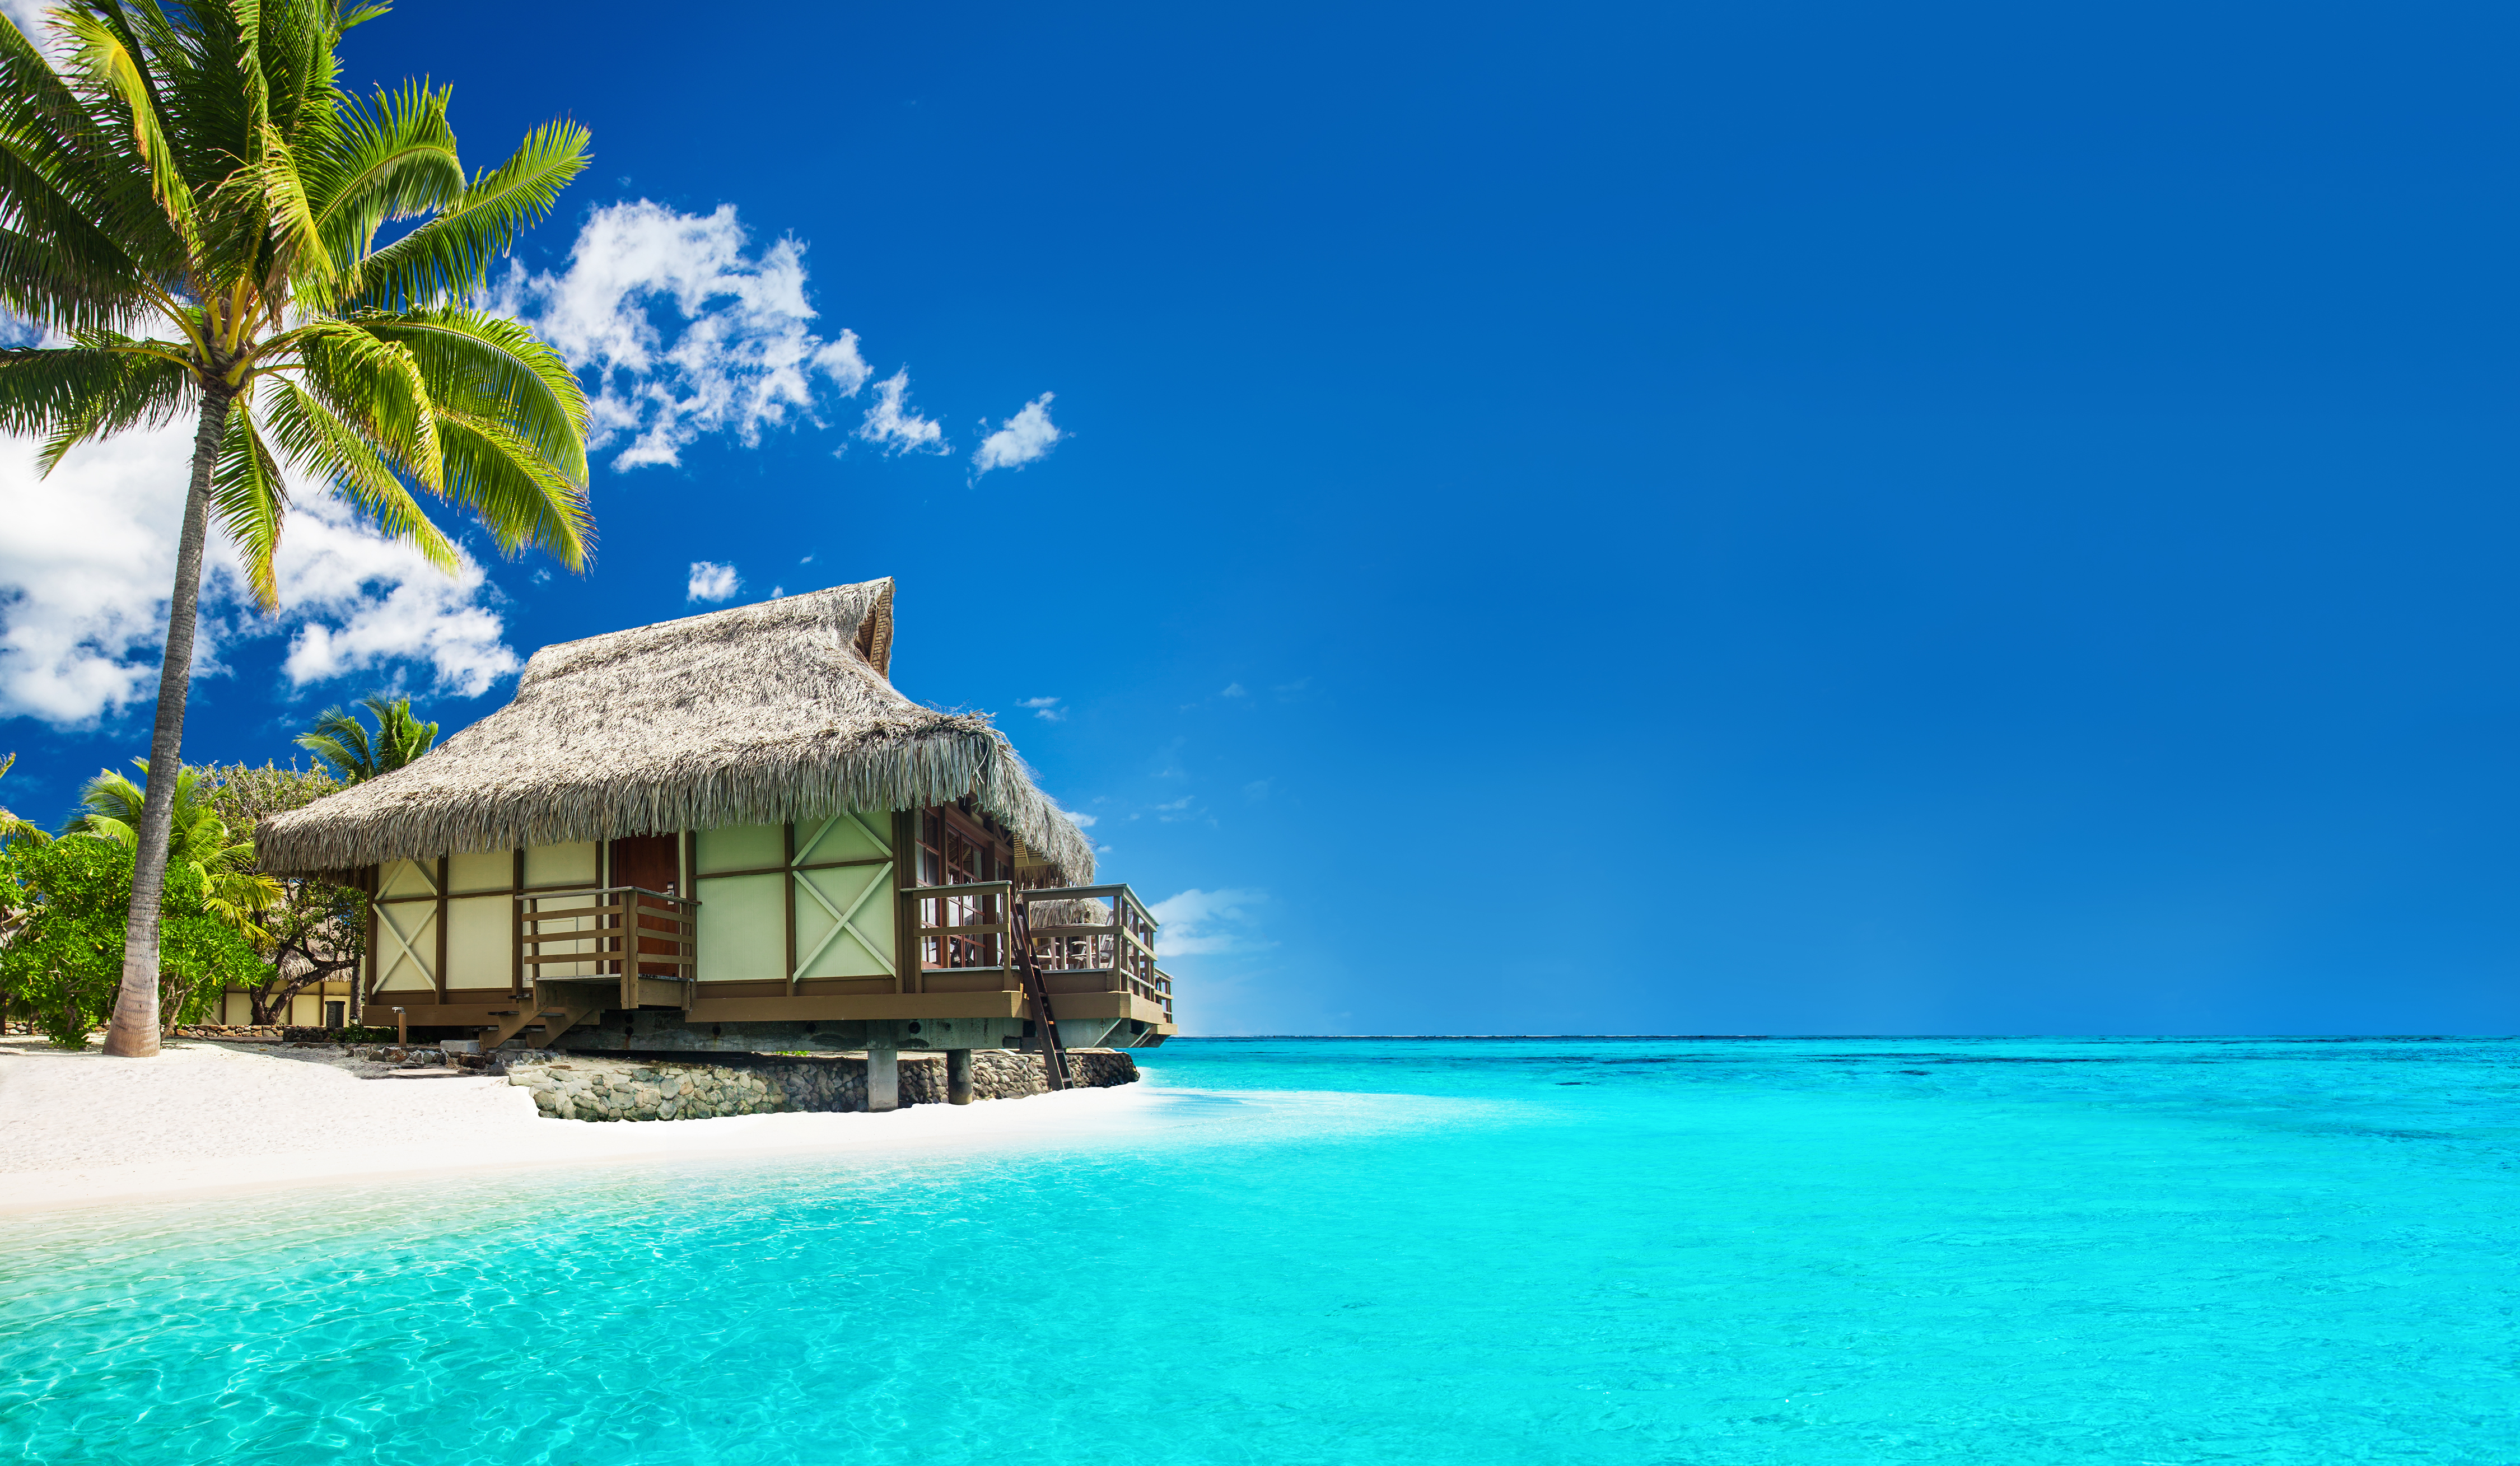 Un bungalow tropical sur la plage | Source : Shutterstock